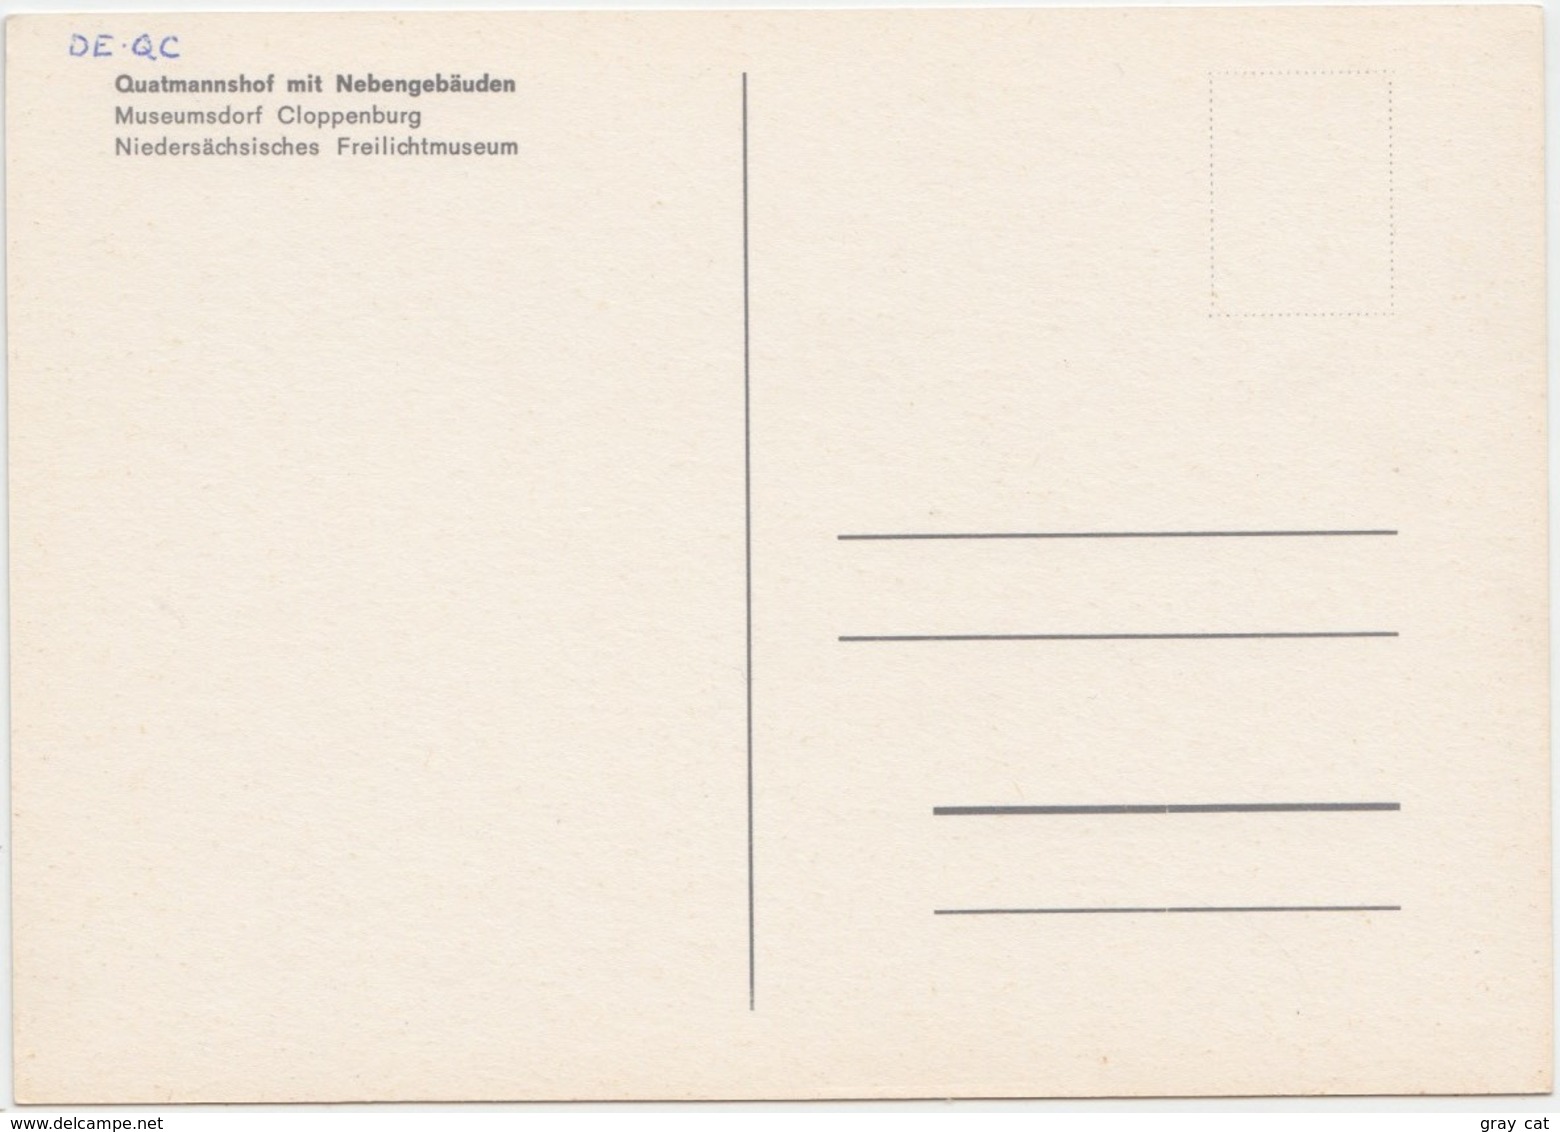 Quatmannshof Mit Nebengebauden, Museumsdorf Cloppenburg, Niedersachsisches Freilichtmuseum, Unused Postcard [21408] - Cloppenburg